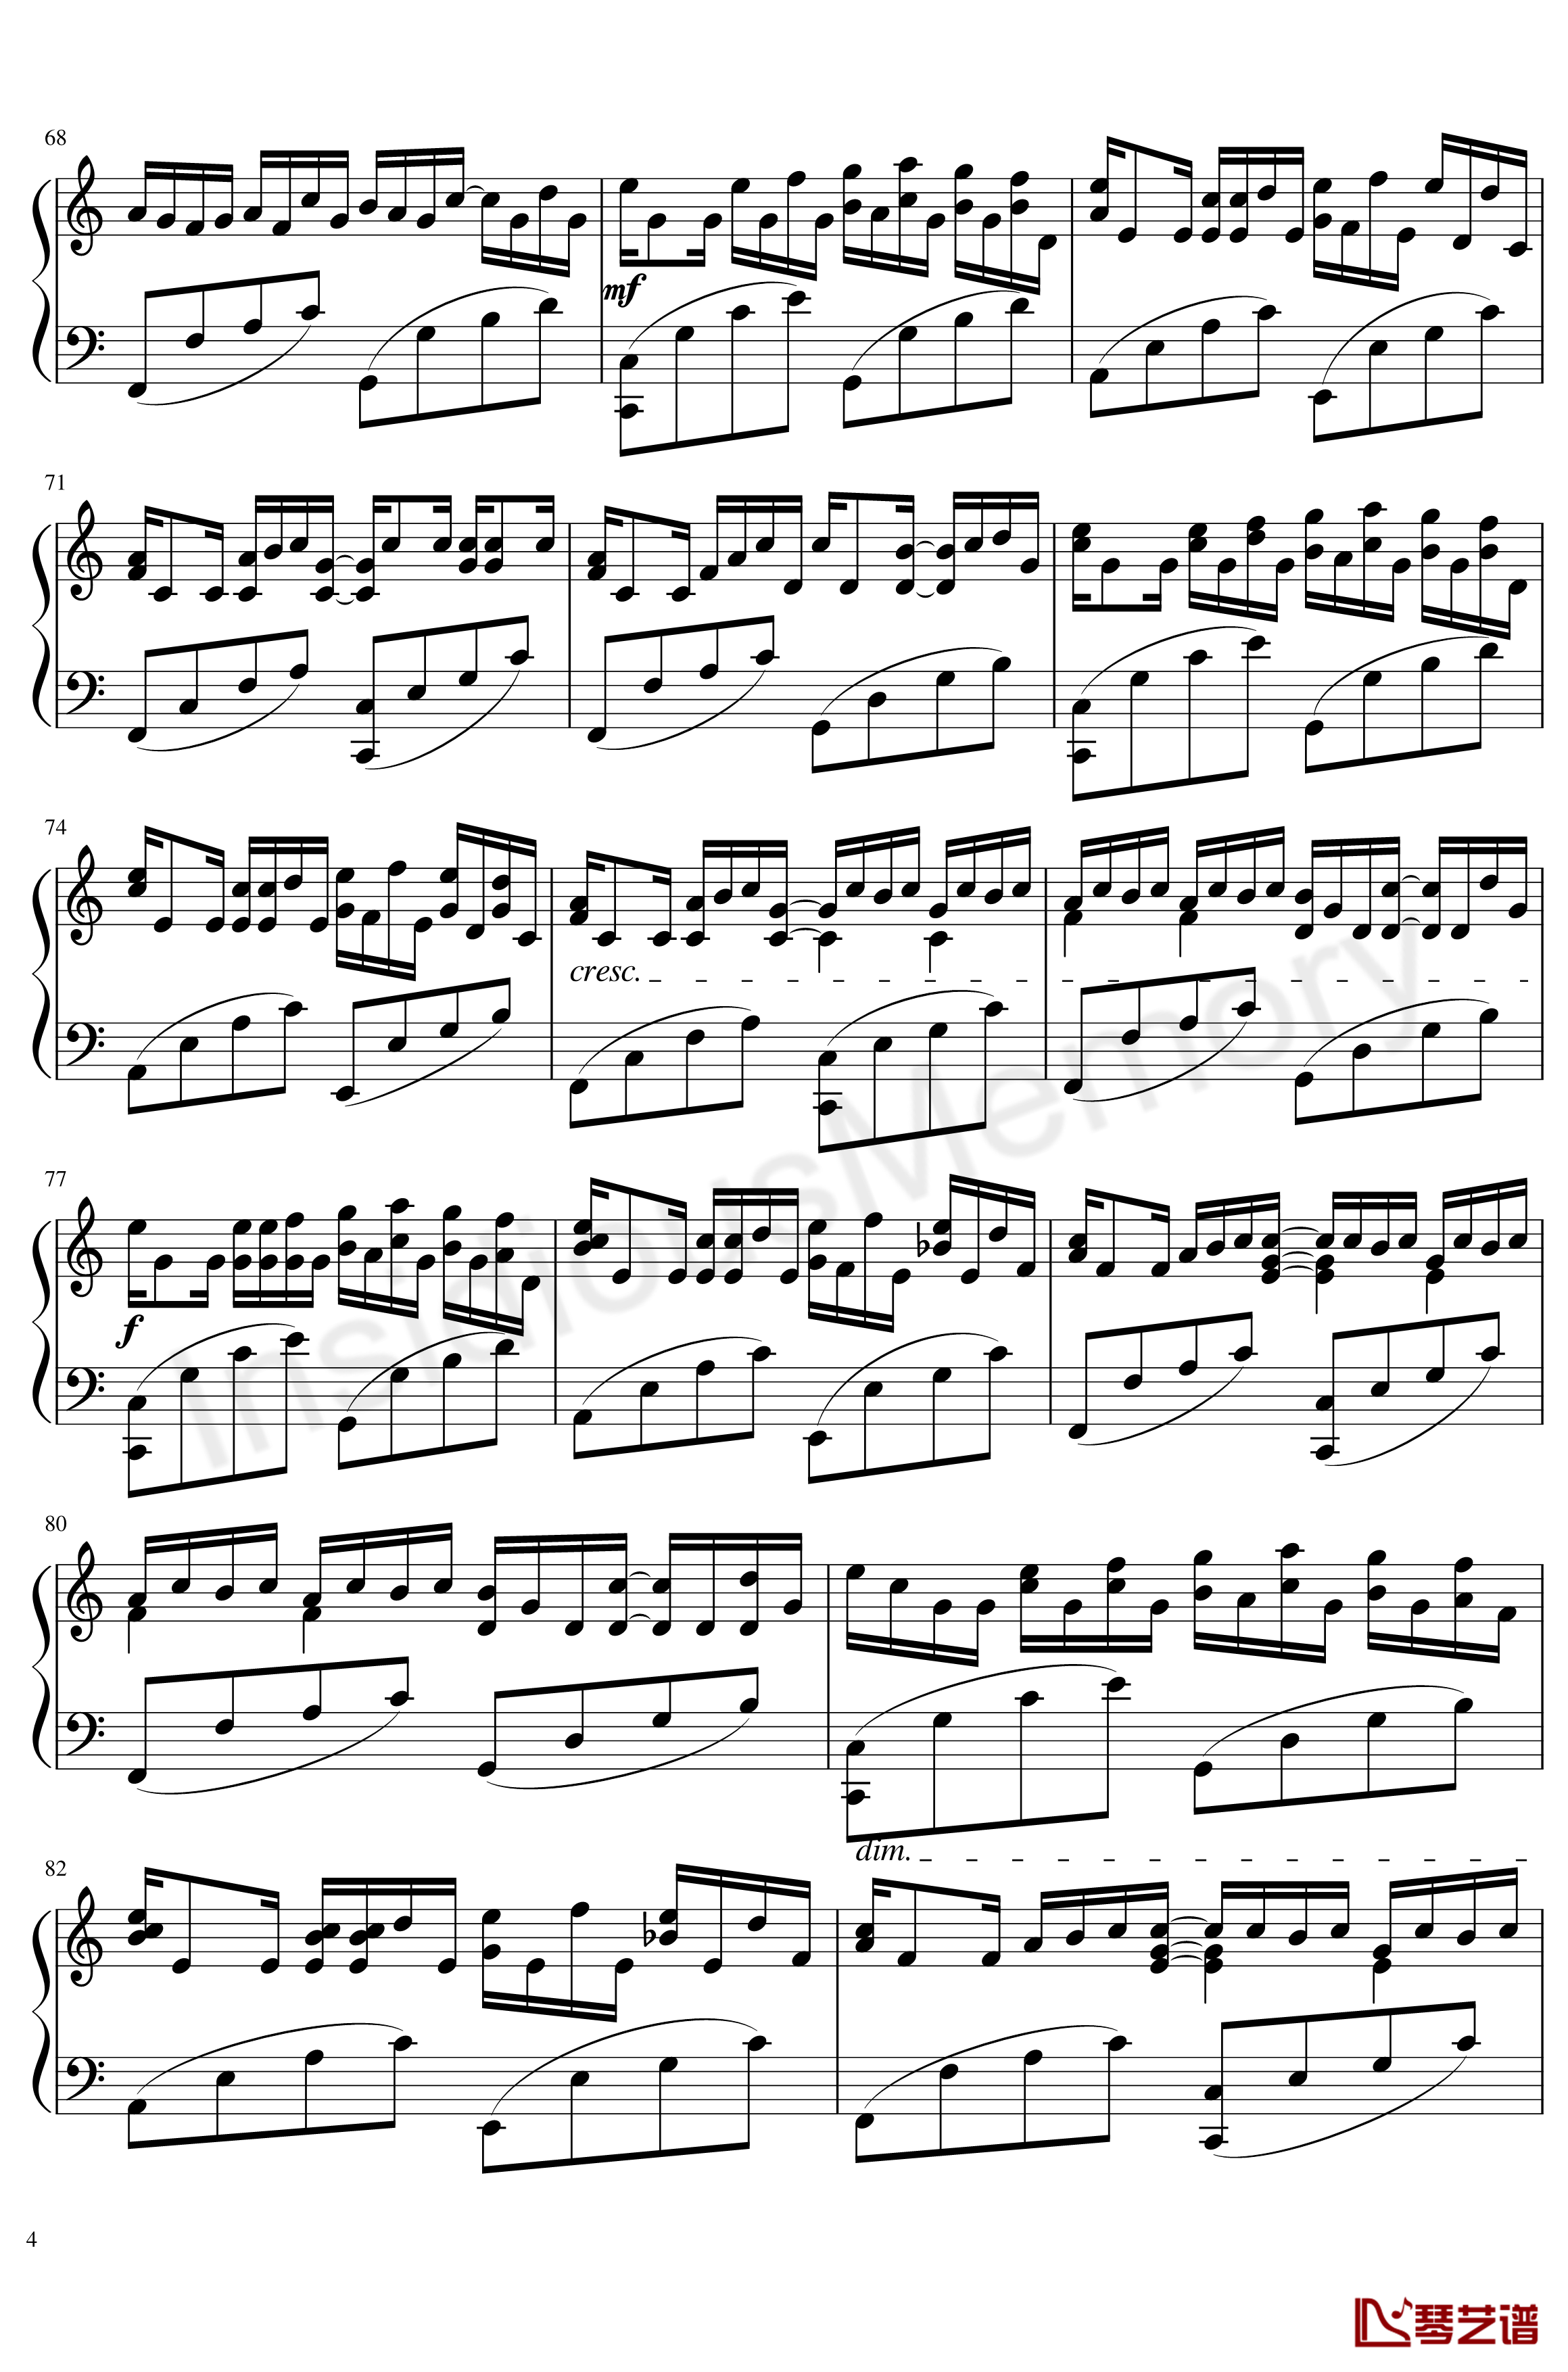 卡农变奏曲钢琴谱-Variations on the Canon-帕赫贝尔-Pachelbel